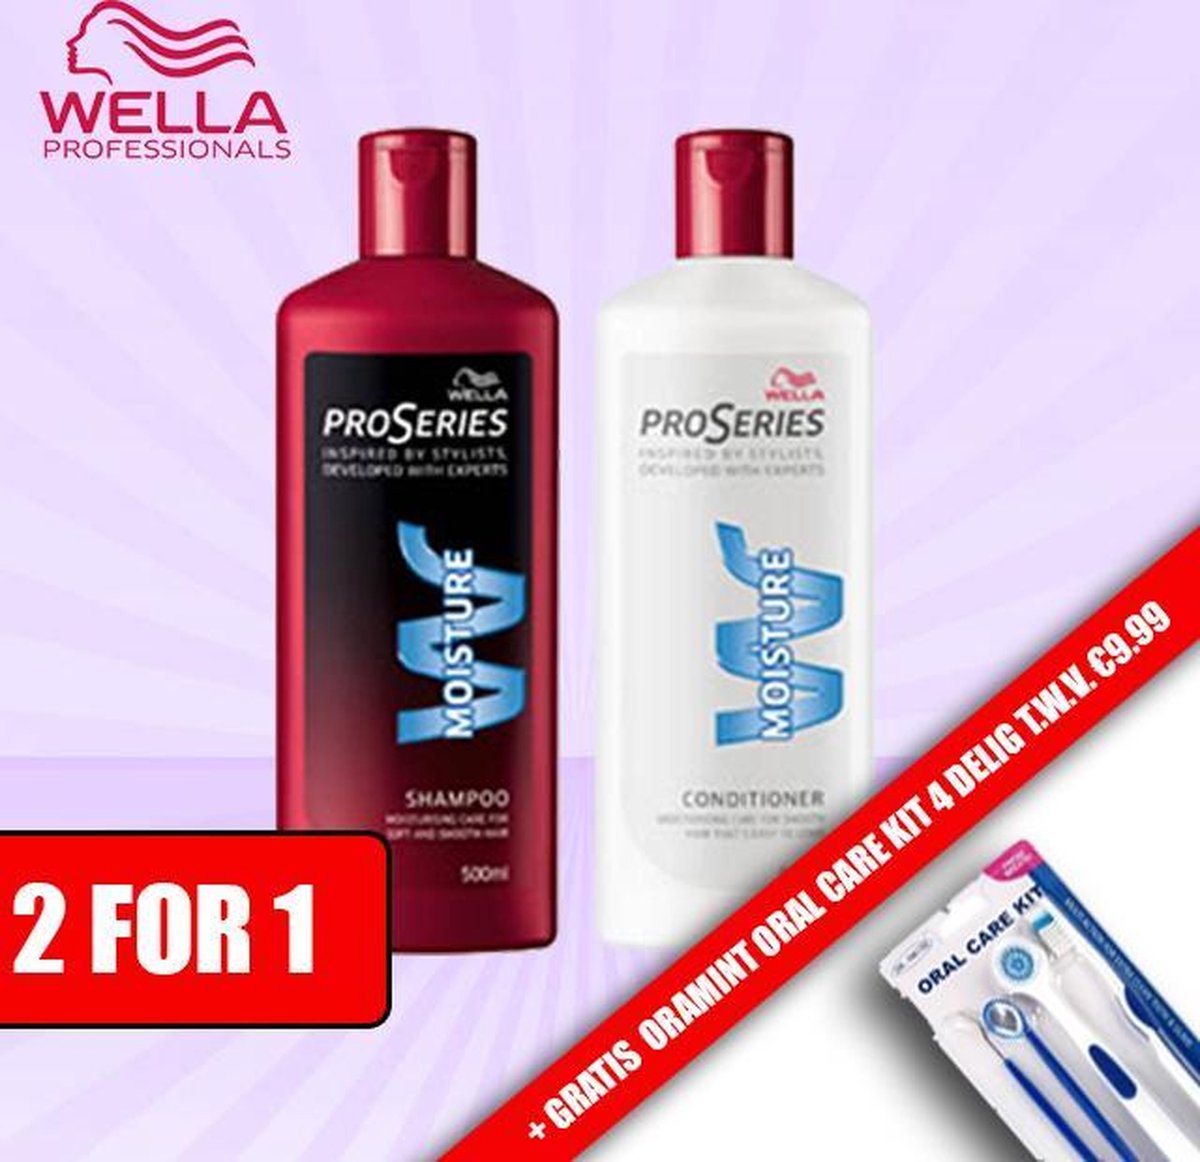 Wella Pro series Moisture Shampoo 500ml + Wella Pro Series Moisture Conditioner 500ml + Oramint 4 Delig oral care kit